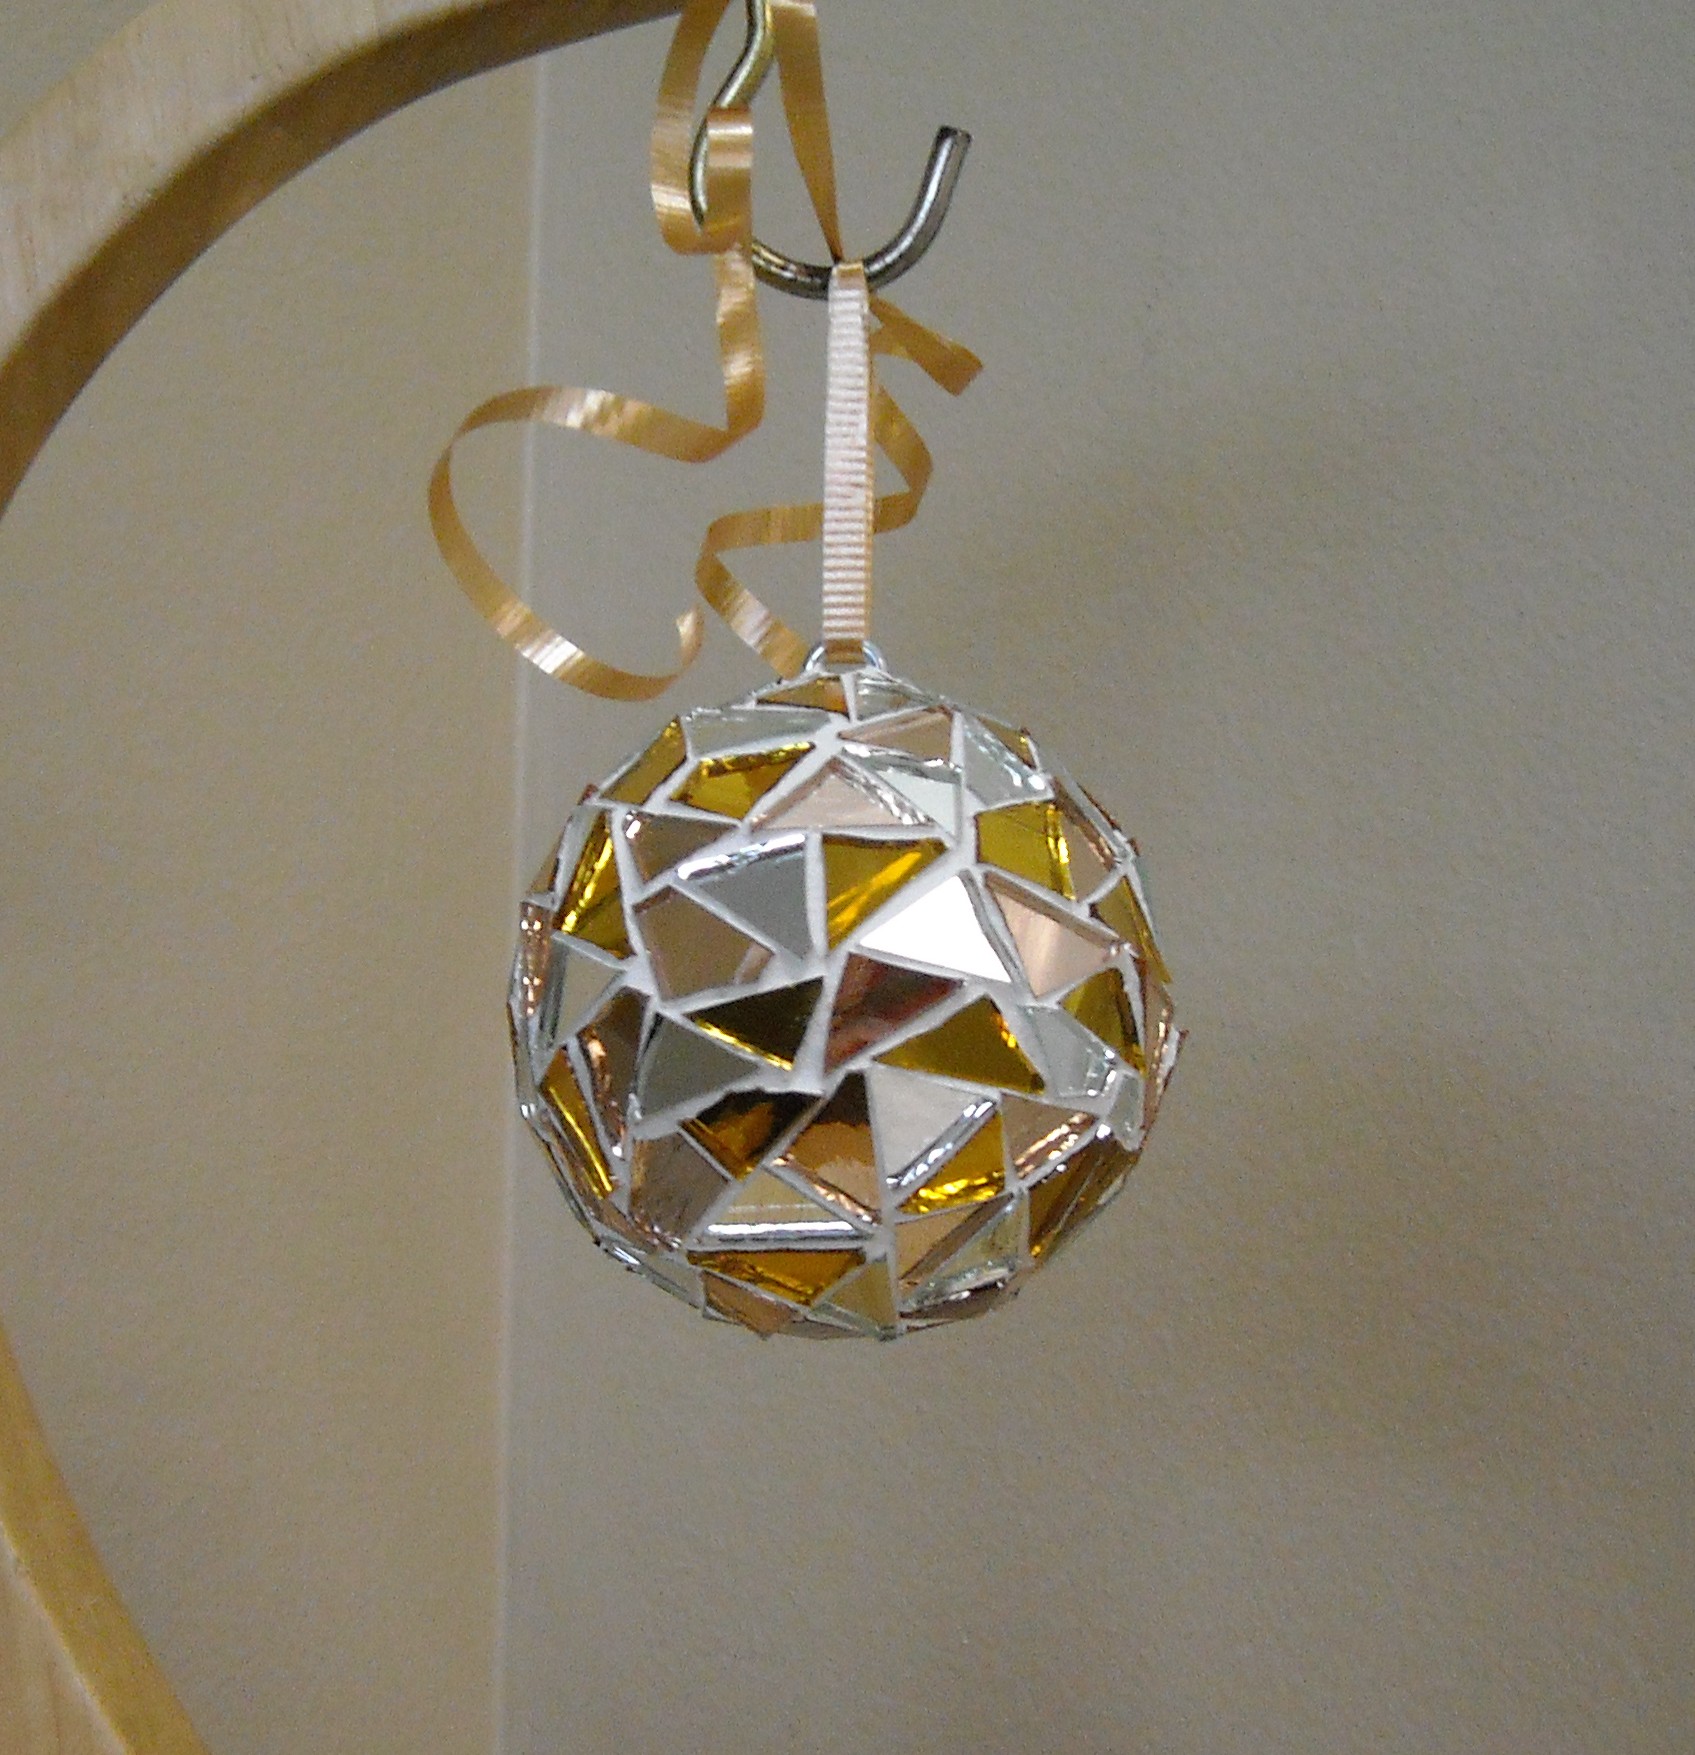 gold-mirror-ornament